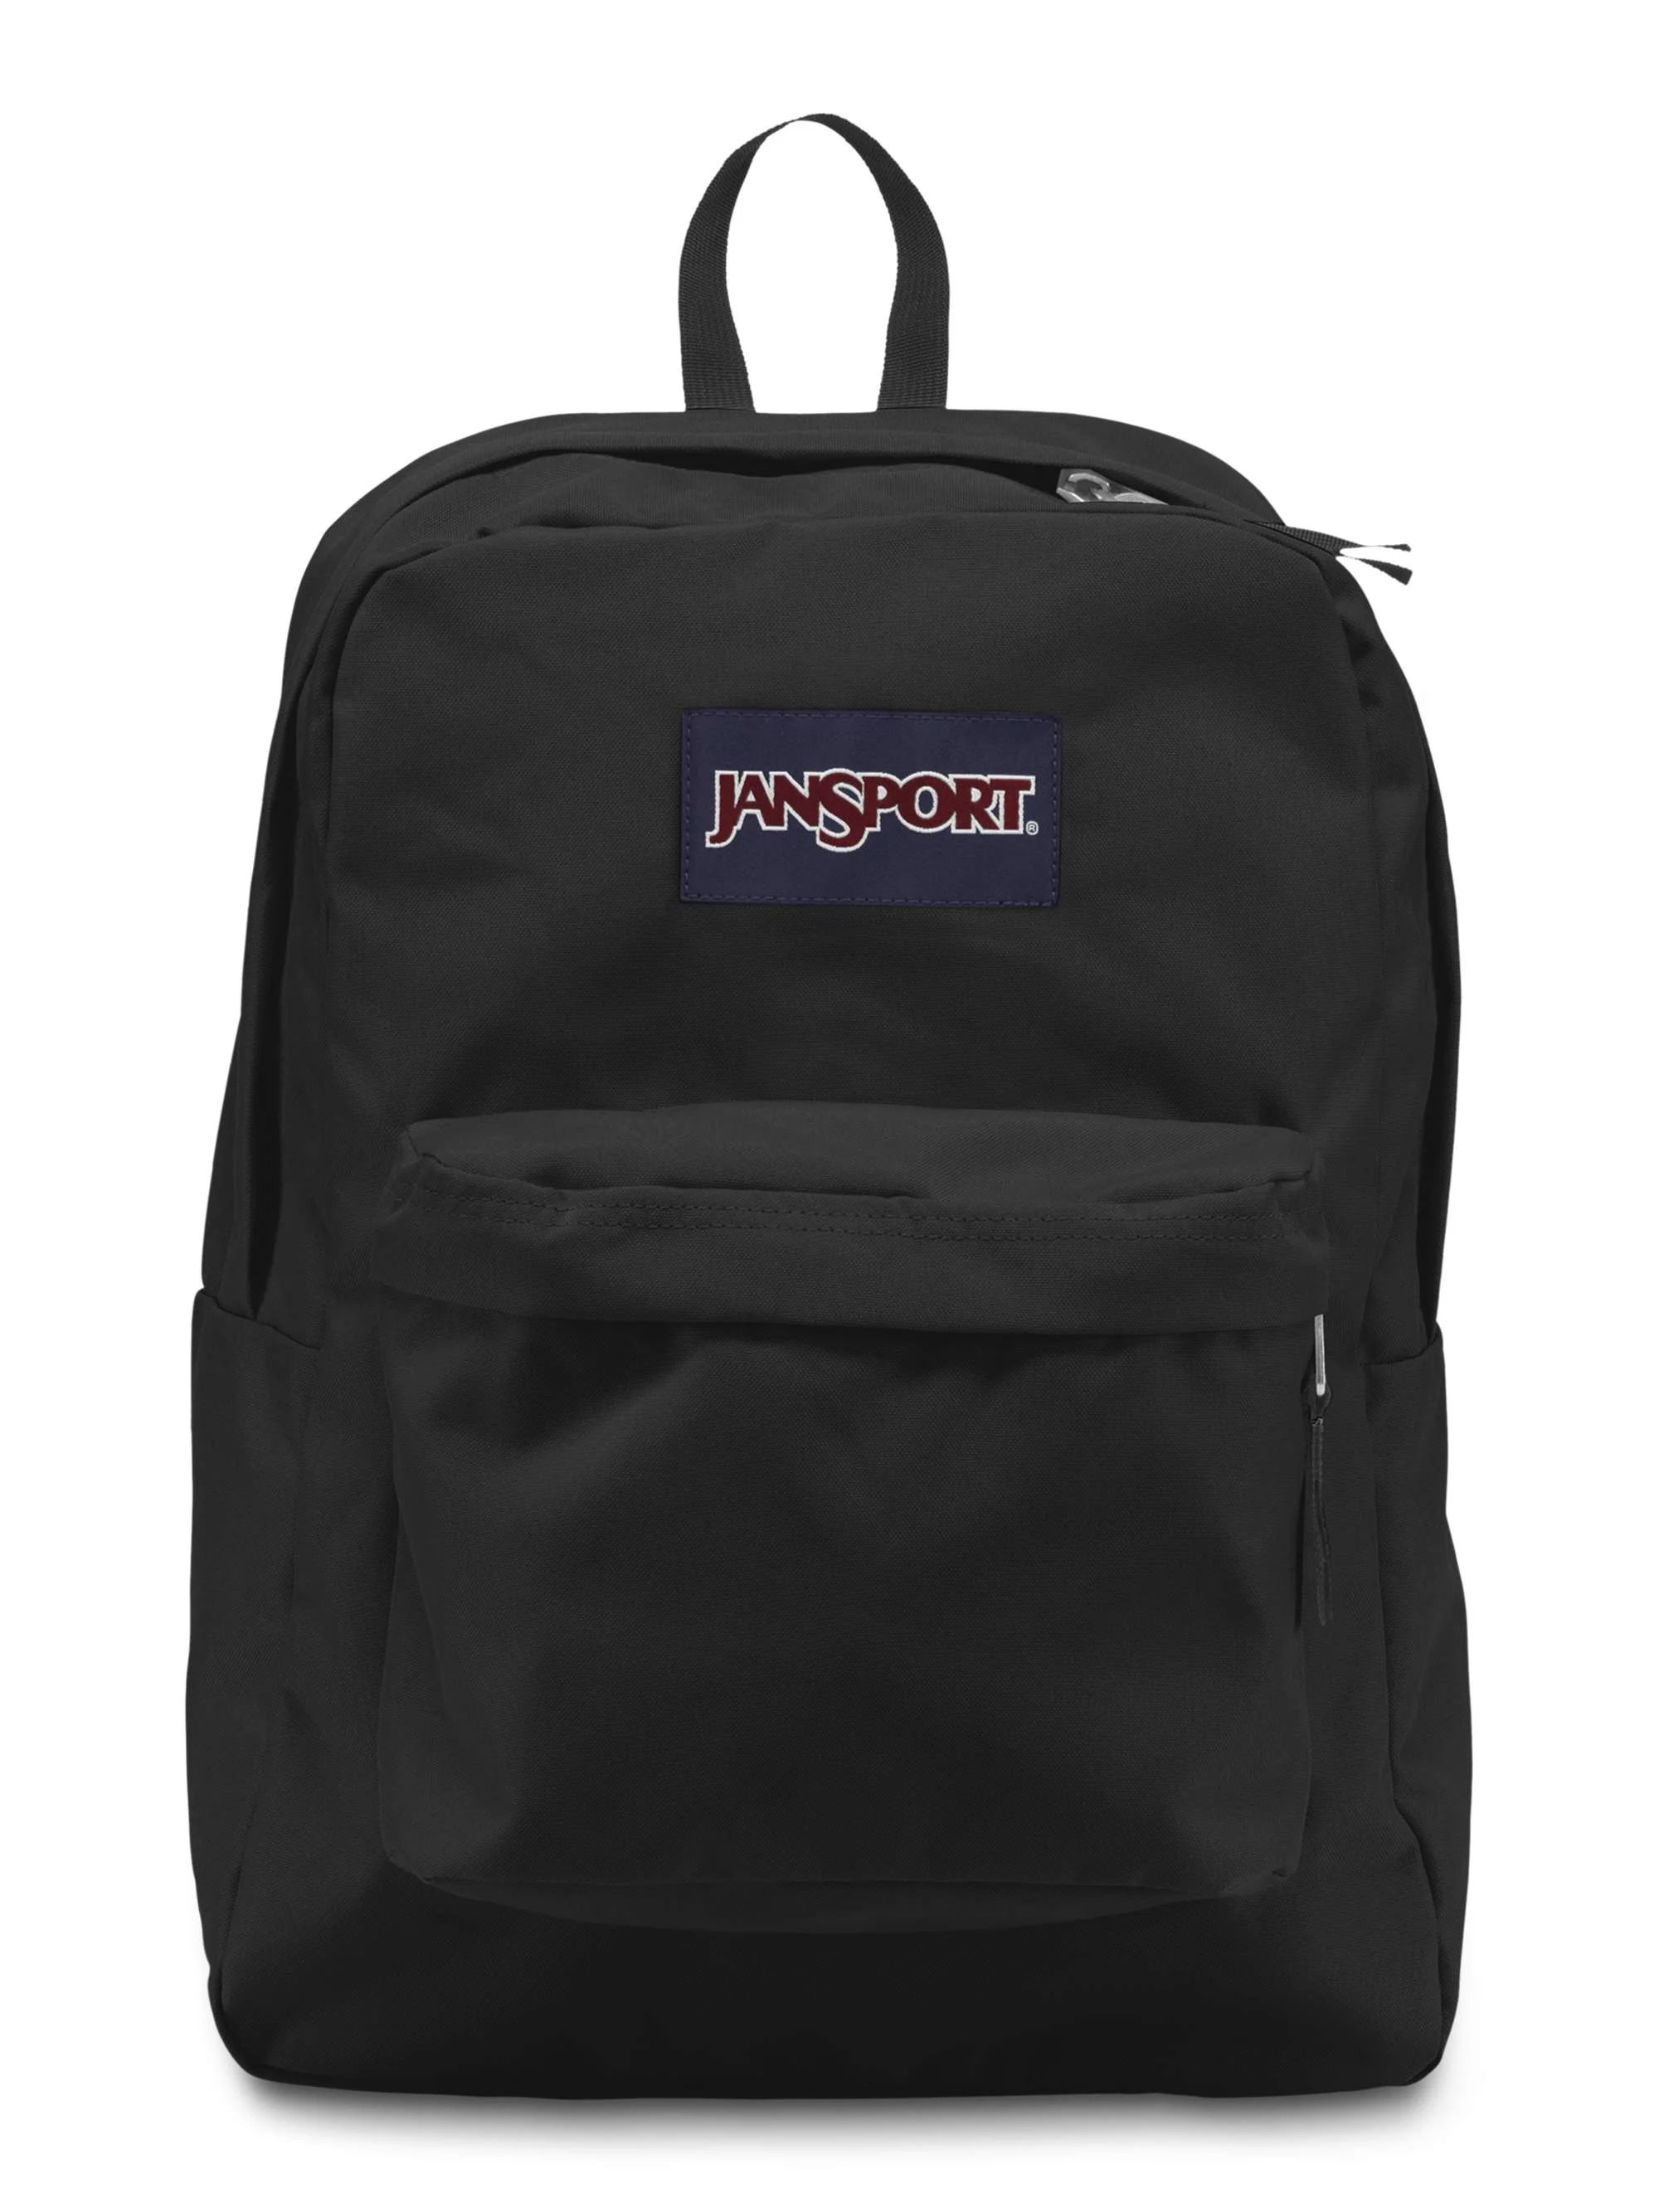 Jansport Superbreak Backpack, Black | Walmart (US)